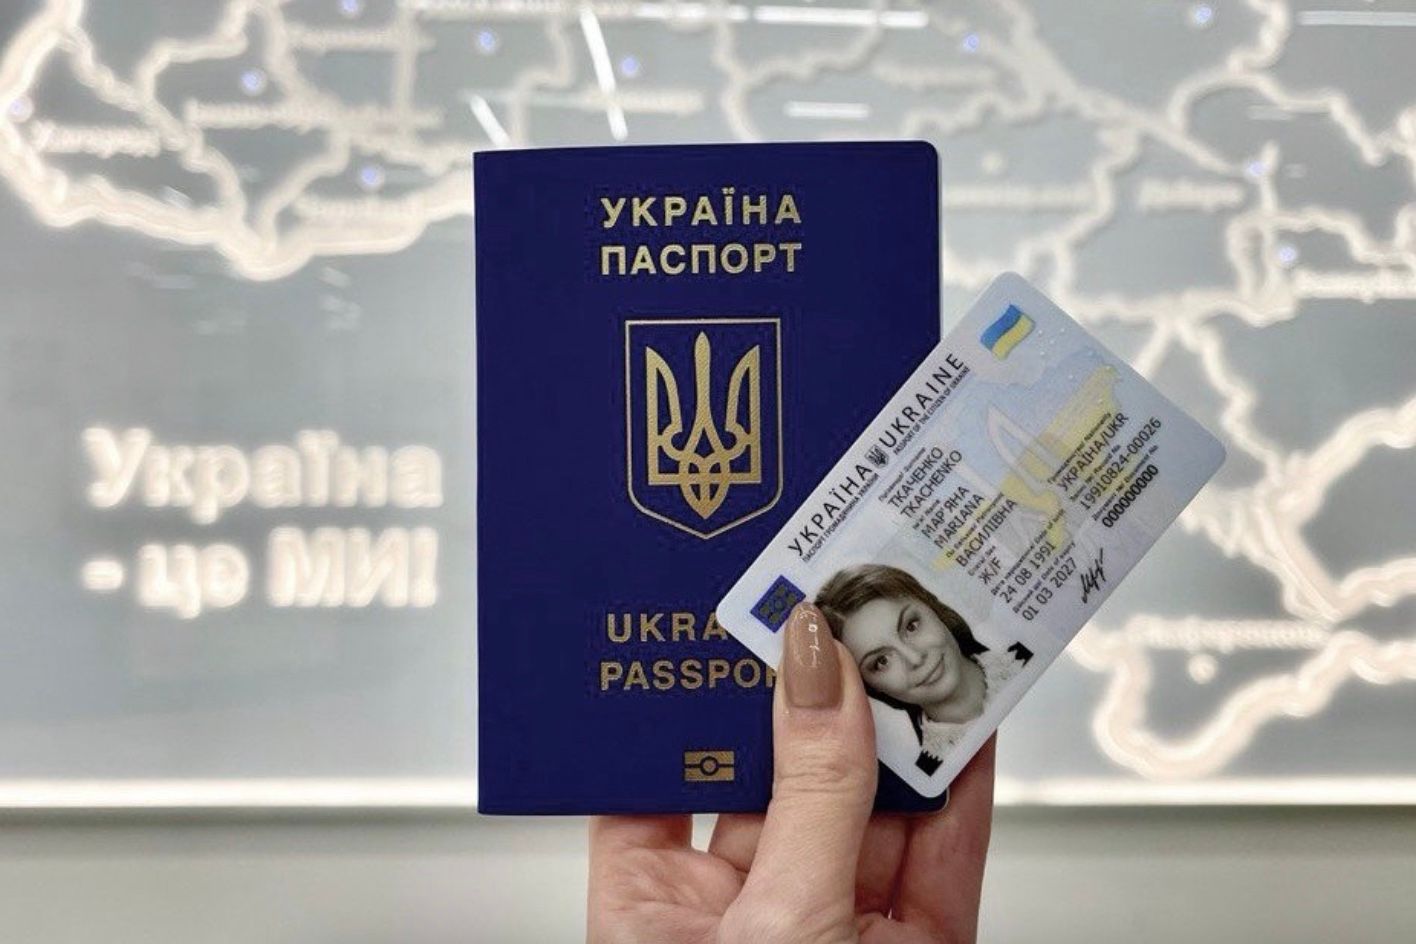 Оформить паспорт за границей теперь можно только по предварительной электронной записи